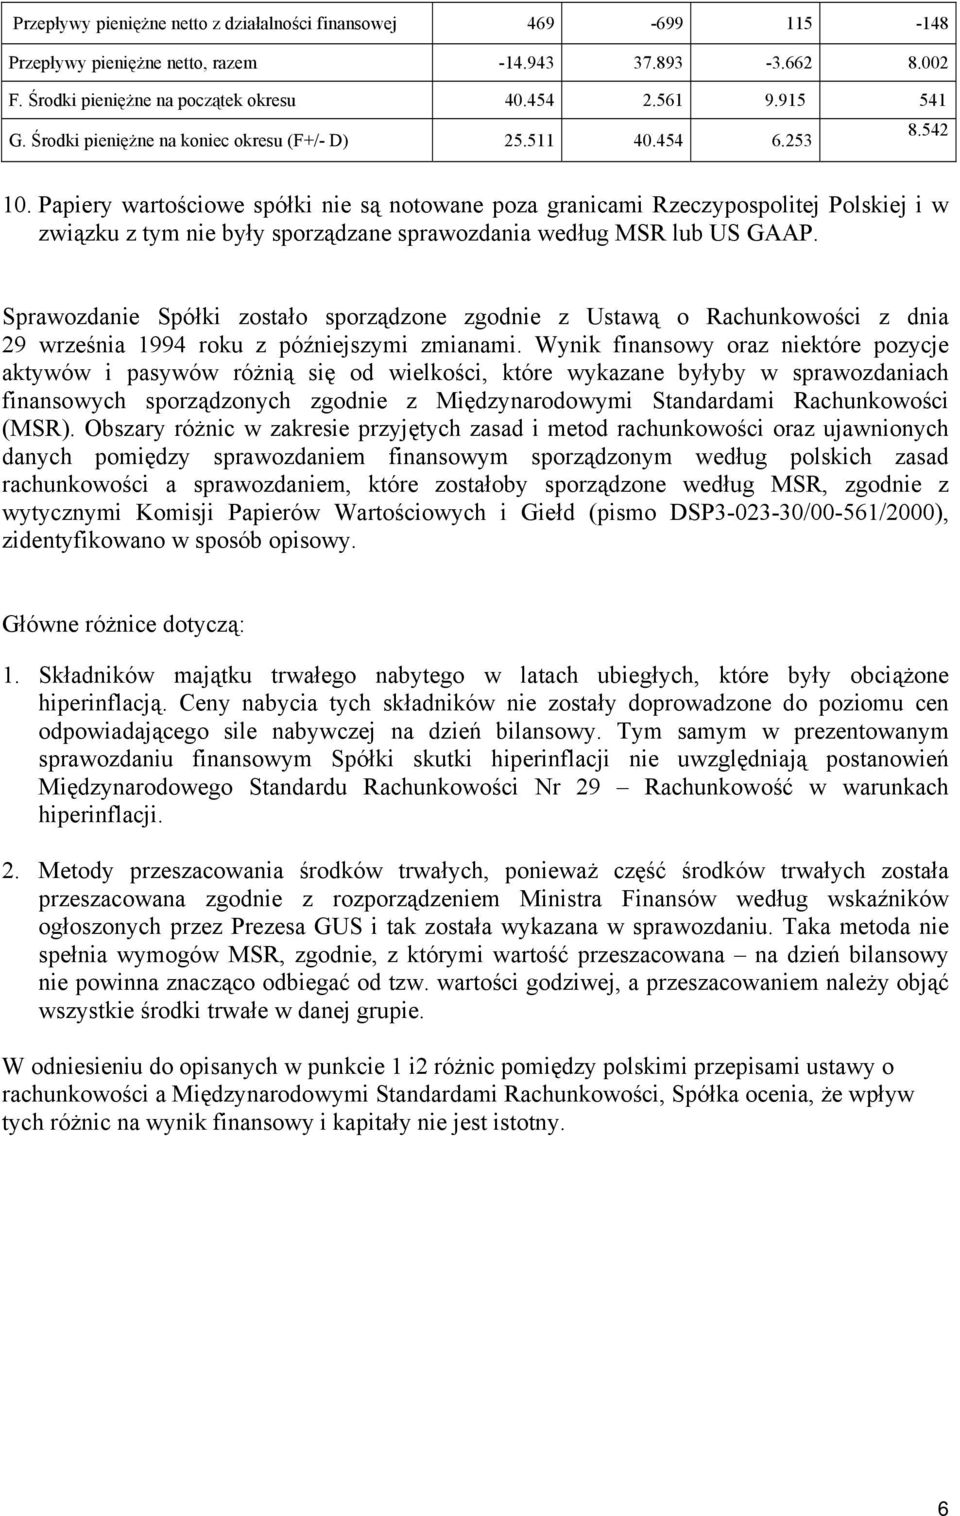 Papiery wartościowe spółki nie są notowane poza granicami Rzeczypospolitej Polskiej i w związku z tym nie były sporządzane sprawozdania według MSR lub US GAAP.